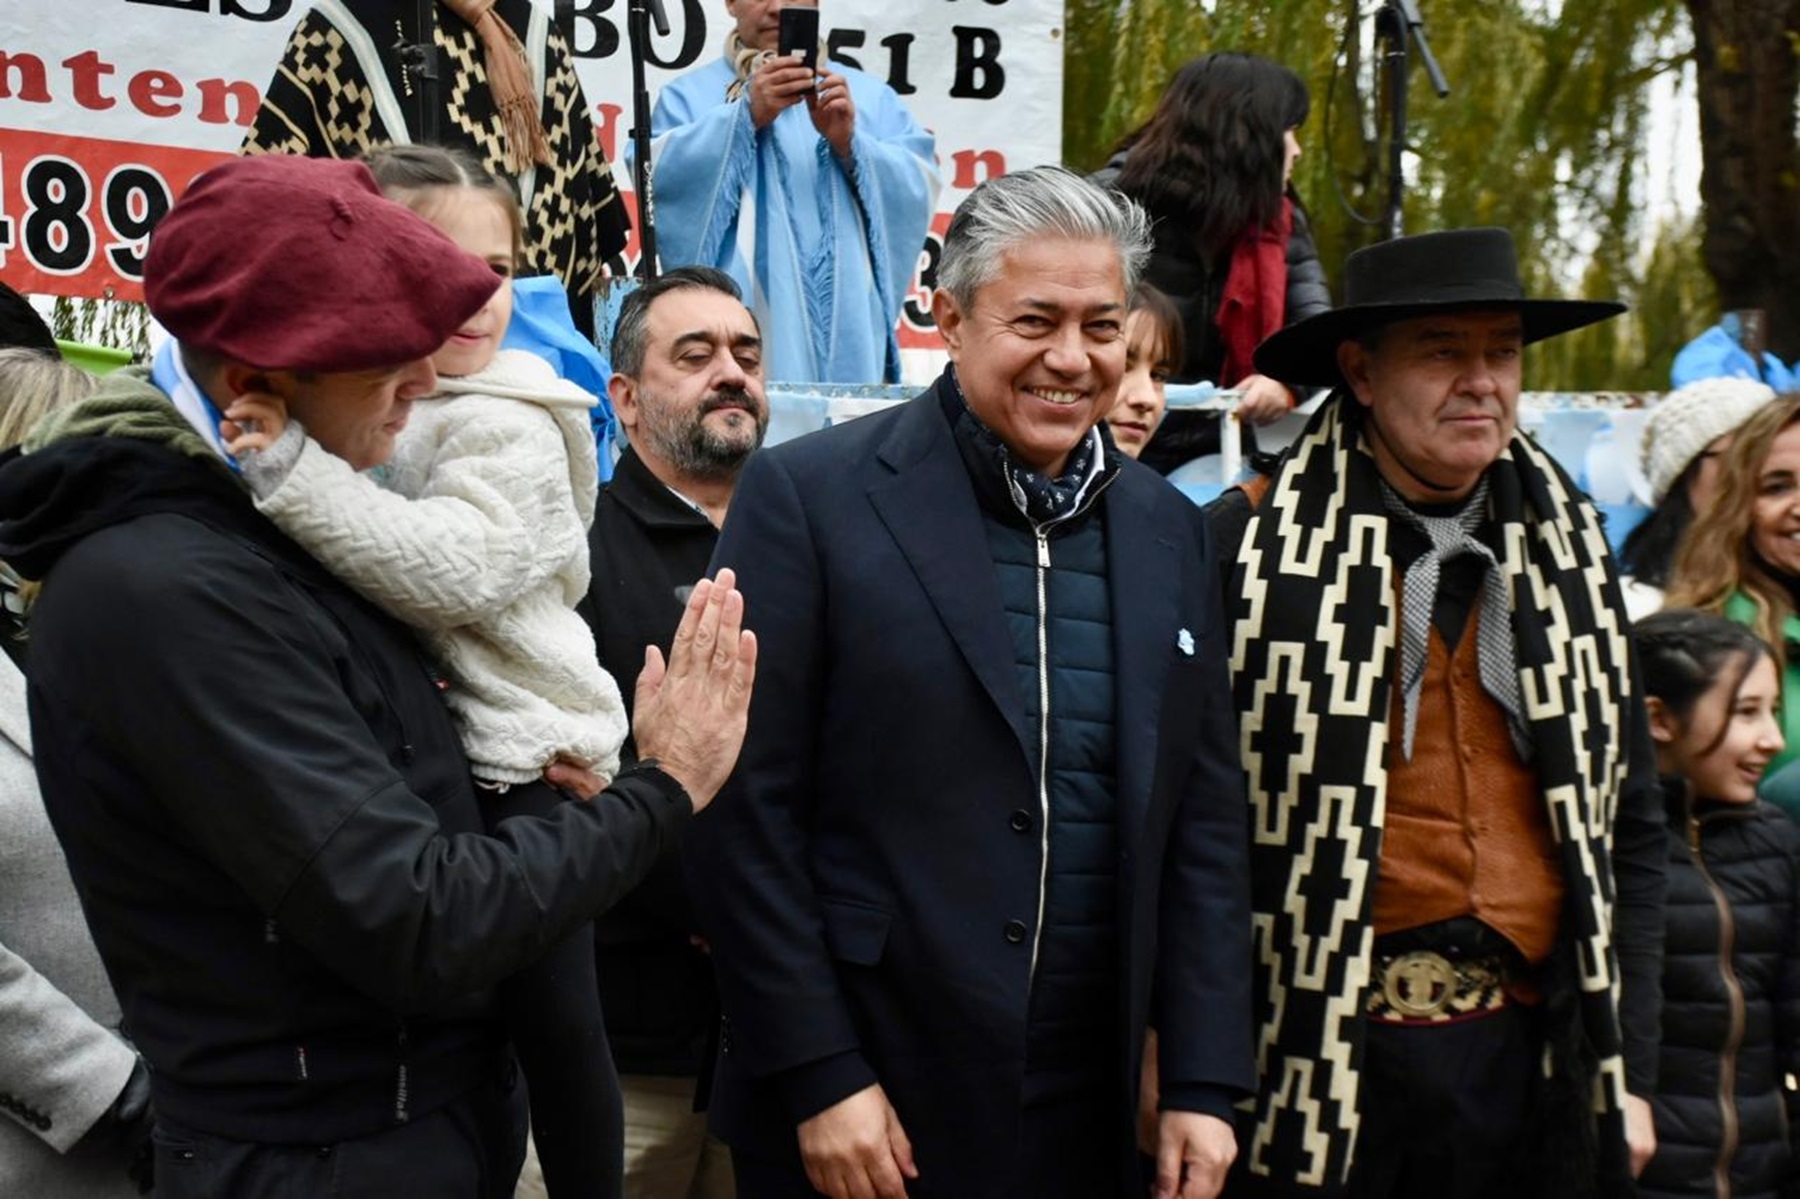 Rolando Figueroa viajó de ver al papa Francisco a Neuquén para el acto del 25 de Mayo, pero no con Gaido. foto: Matías Subat